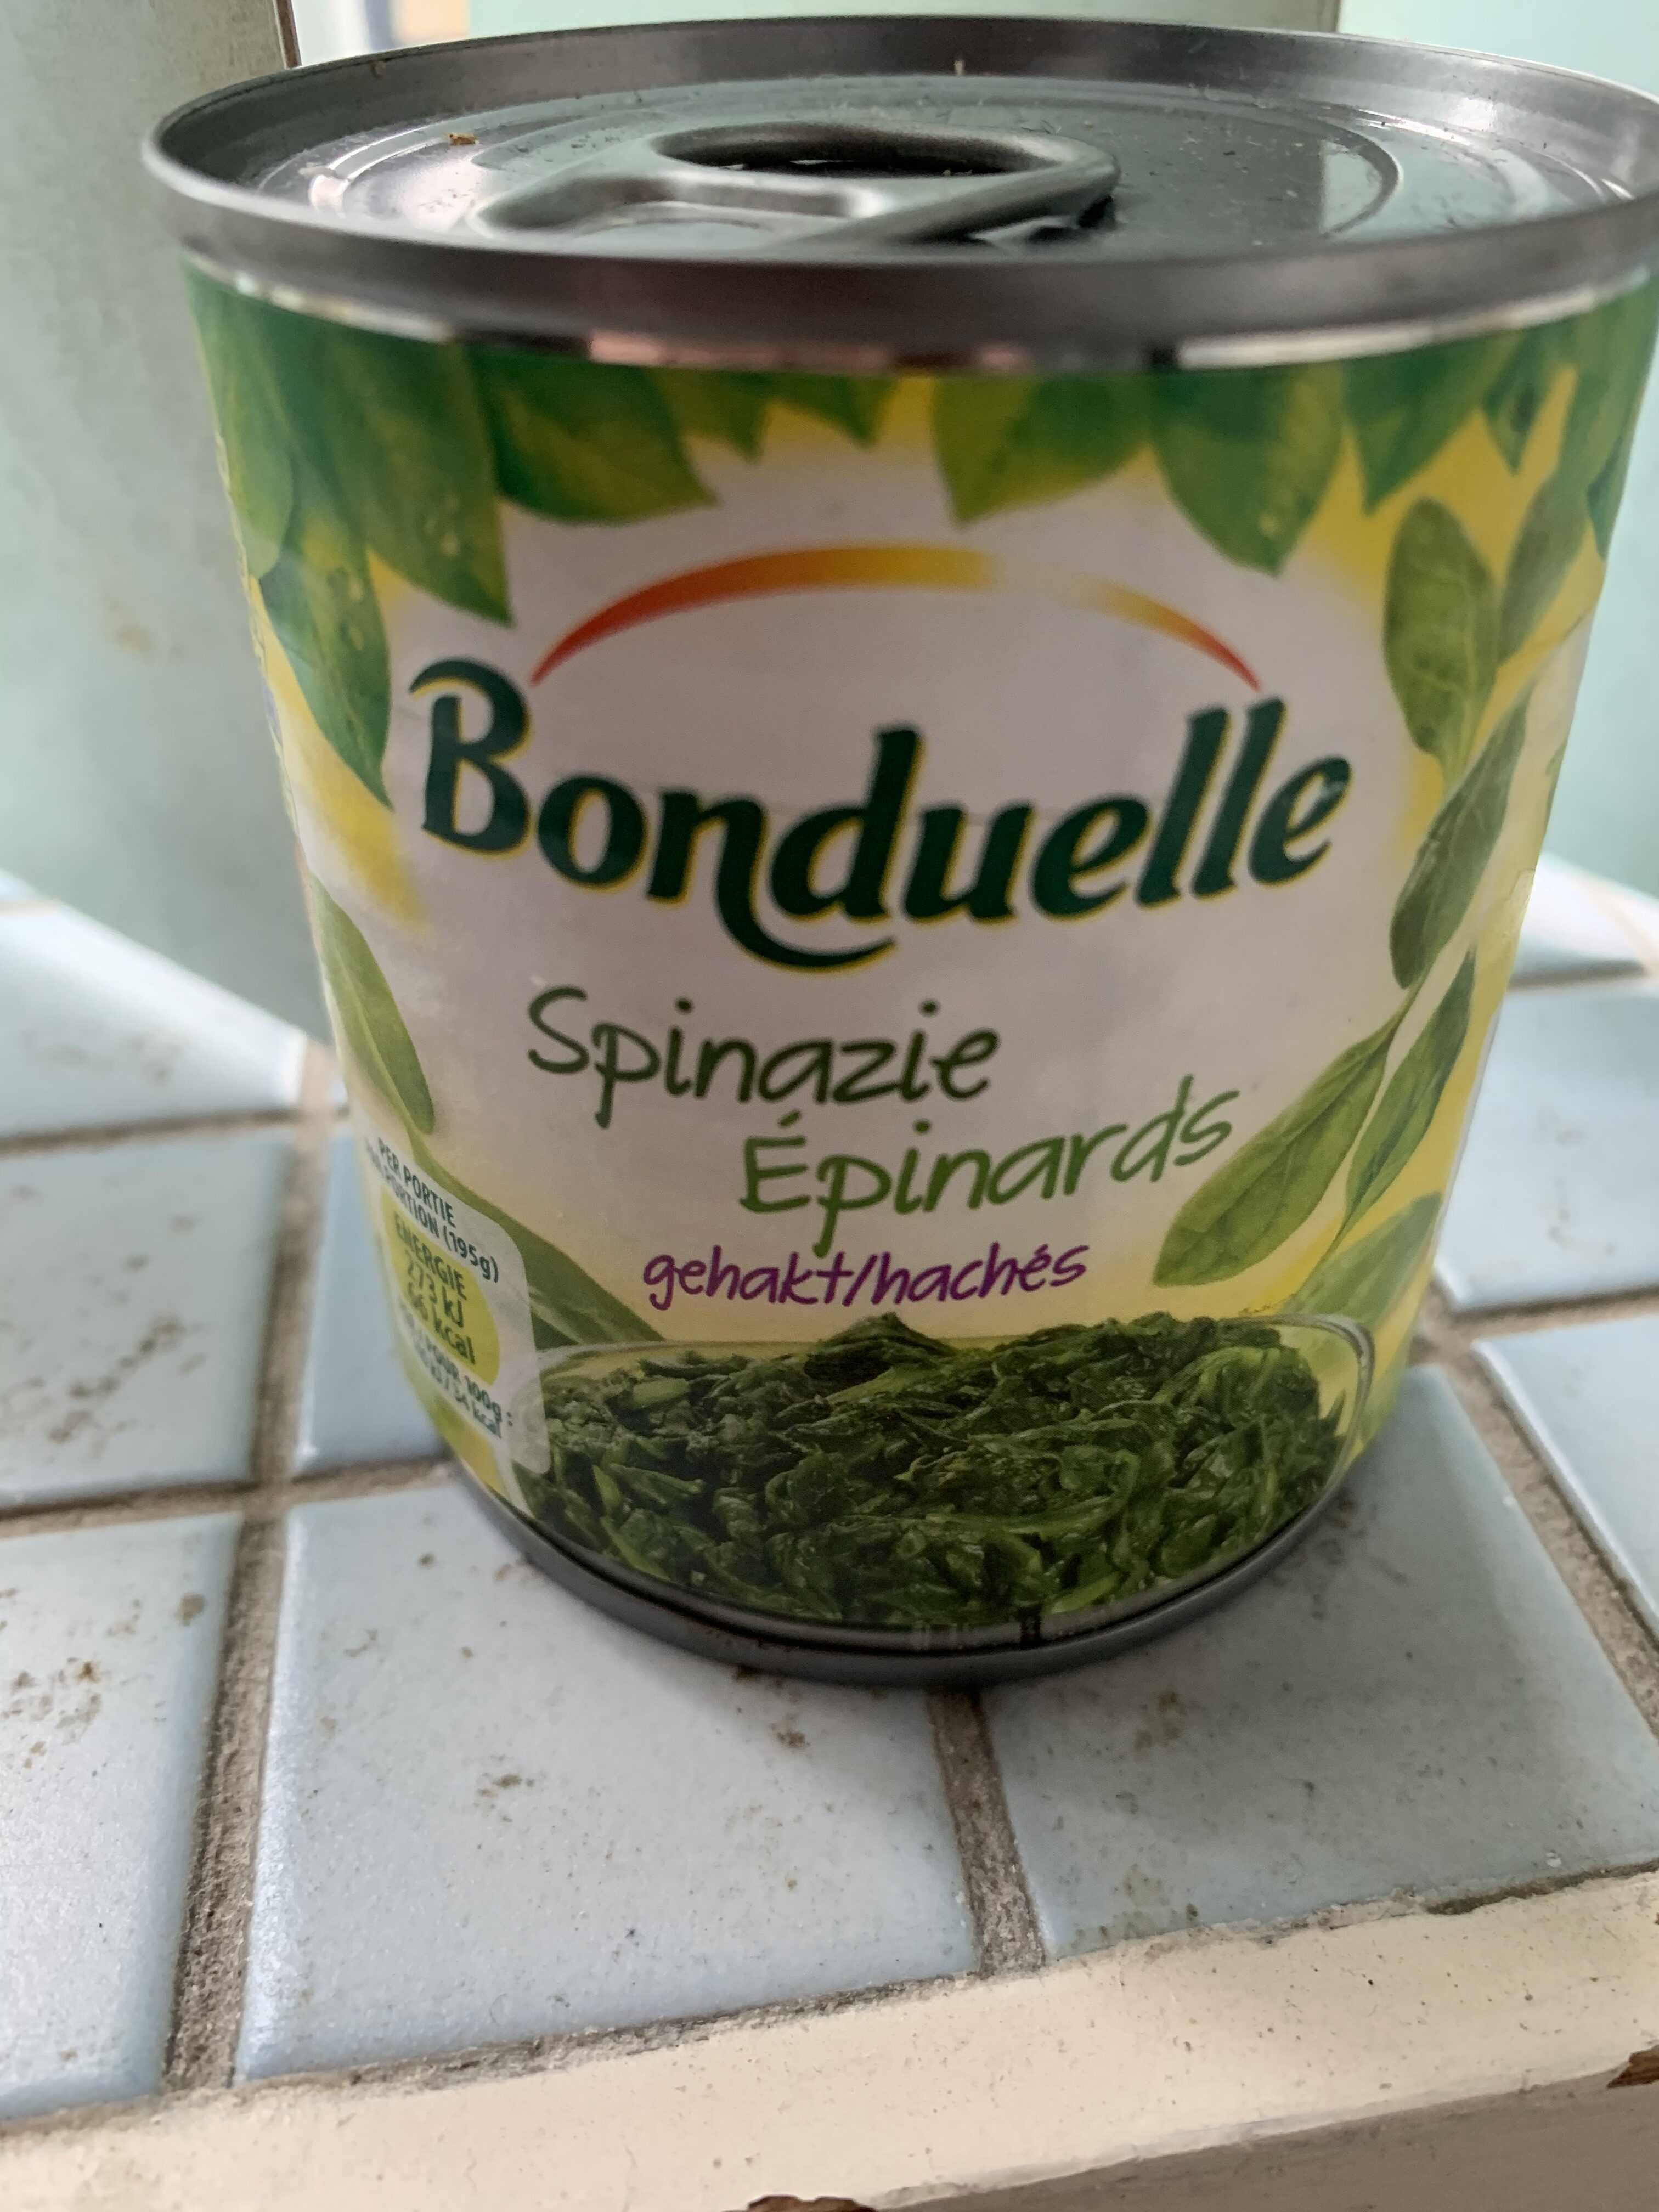 Bonduelle spinazie - Product - en